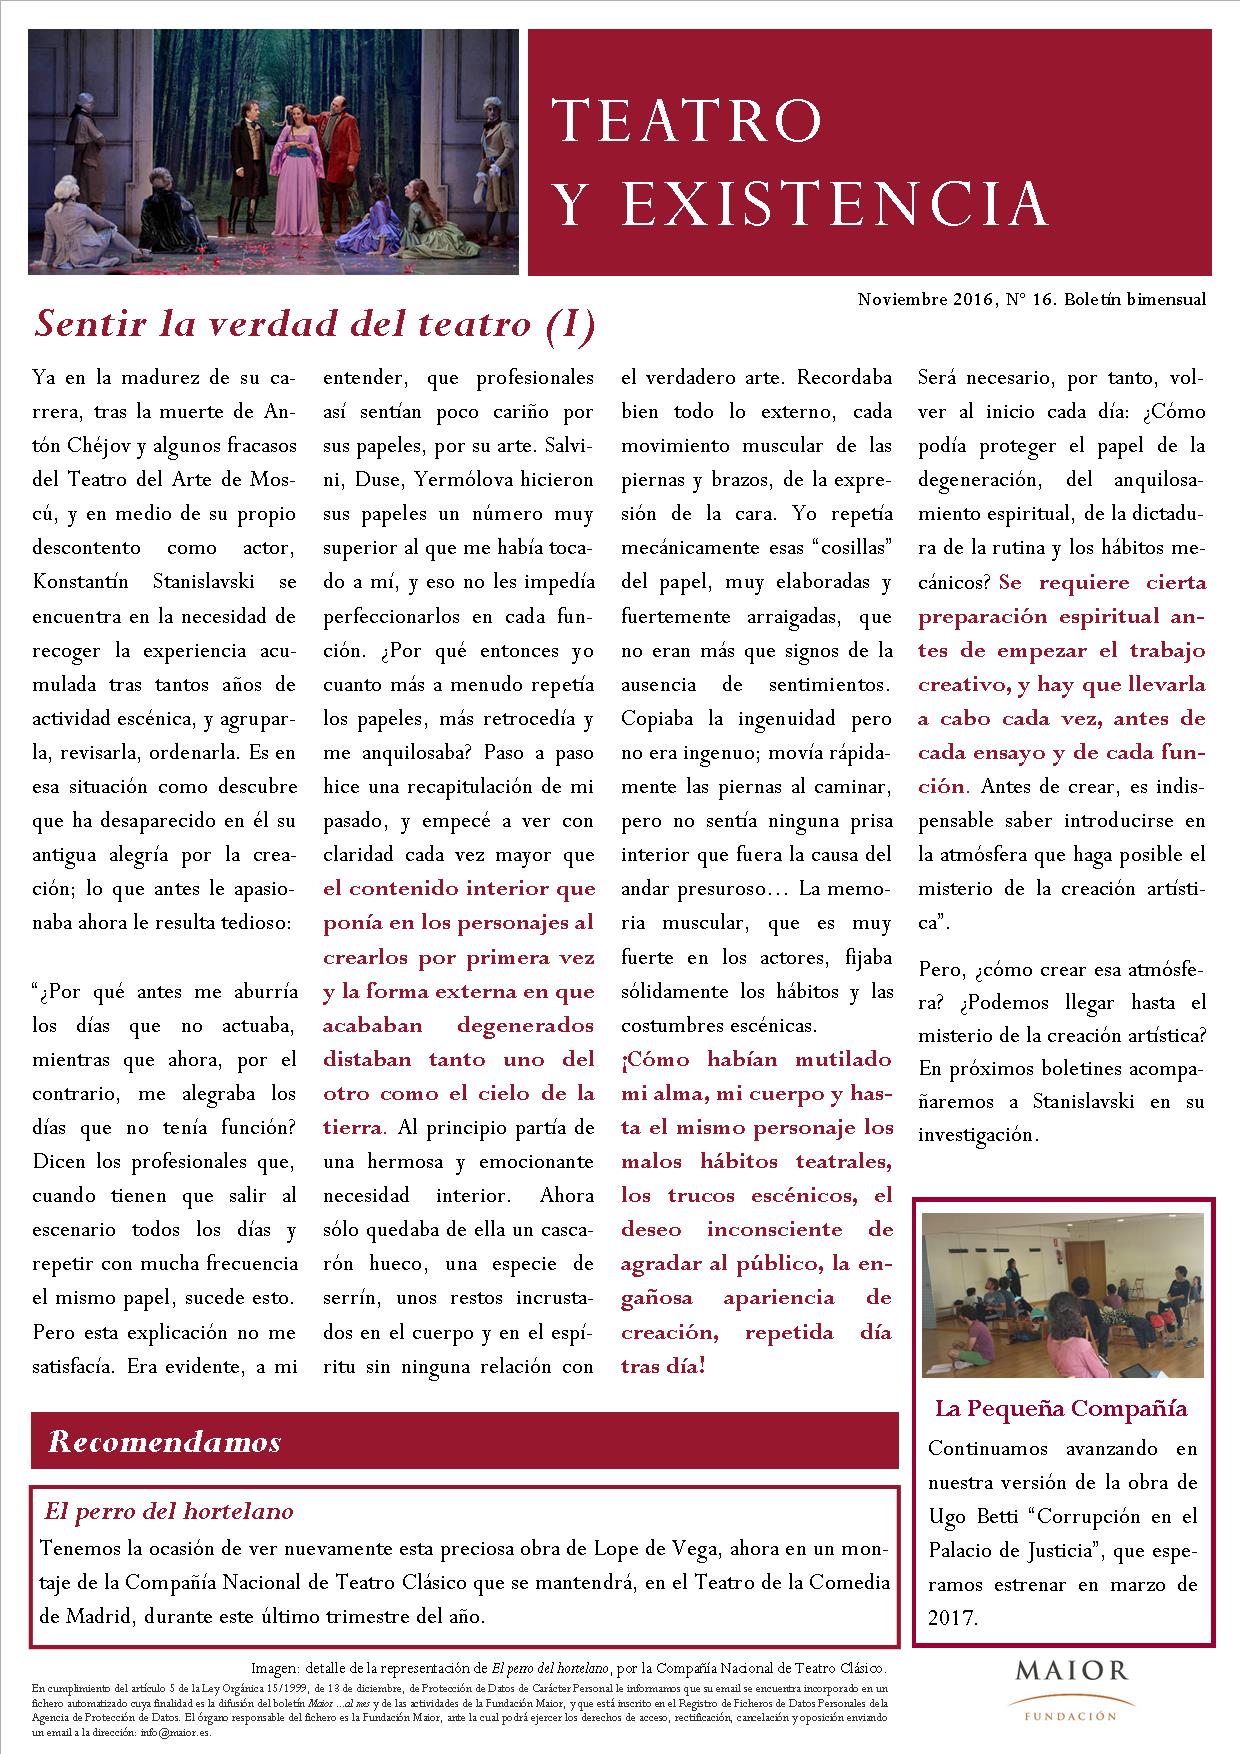 Boletín de Teatro y Existencia de La Pequeña Compañía de la Fundación Maior, con recomendaciones de la cartelera. Edición de Noviembre 2016